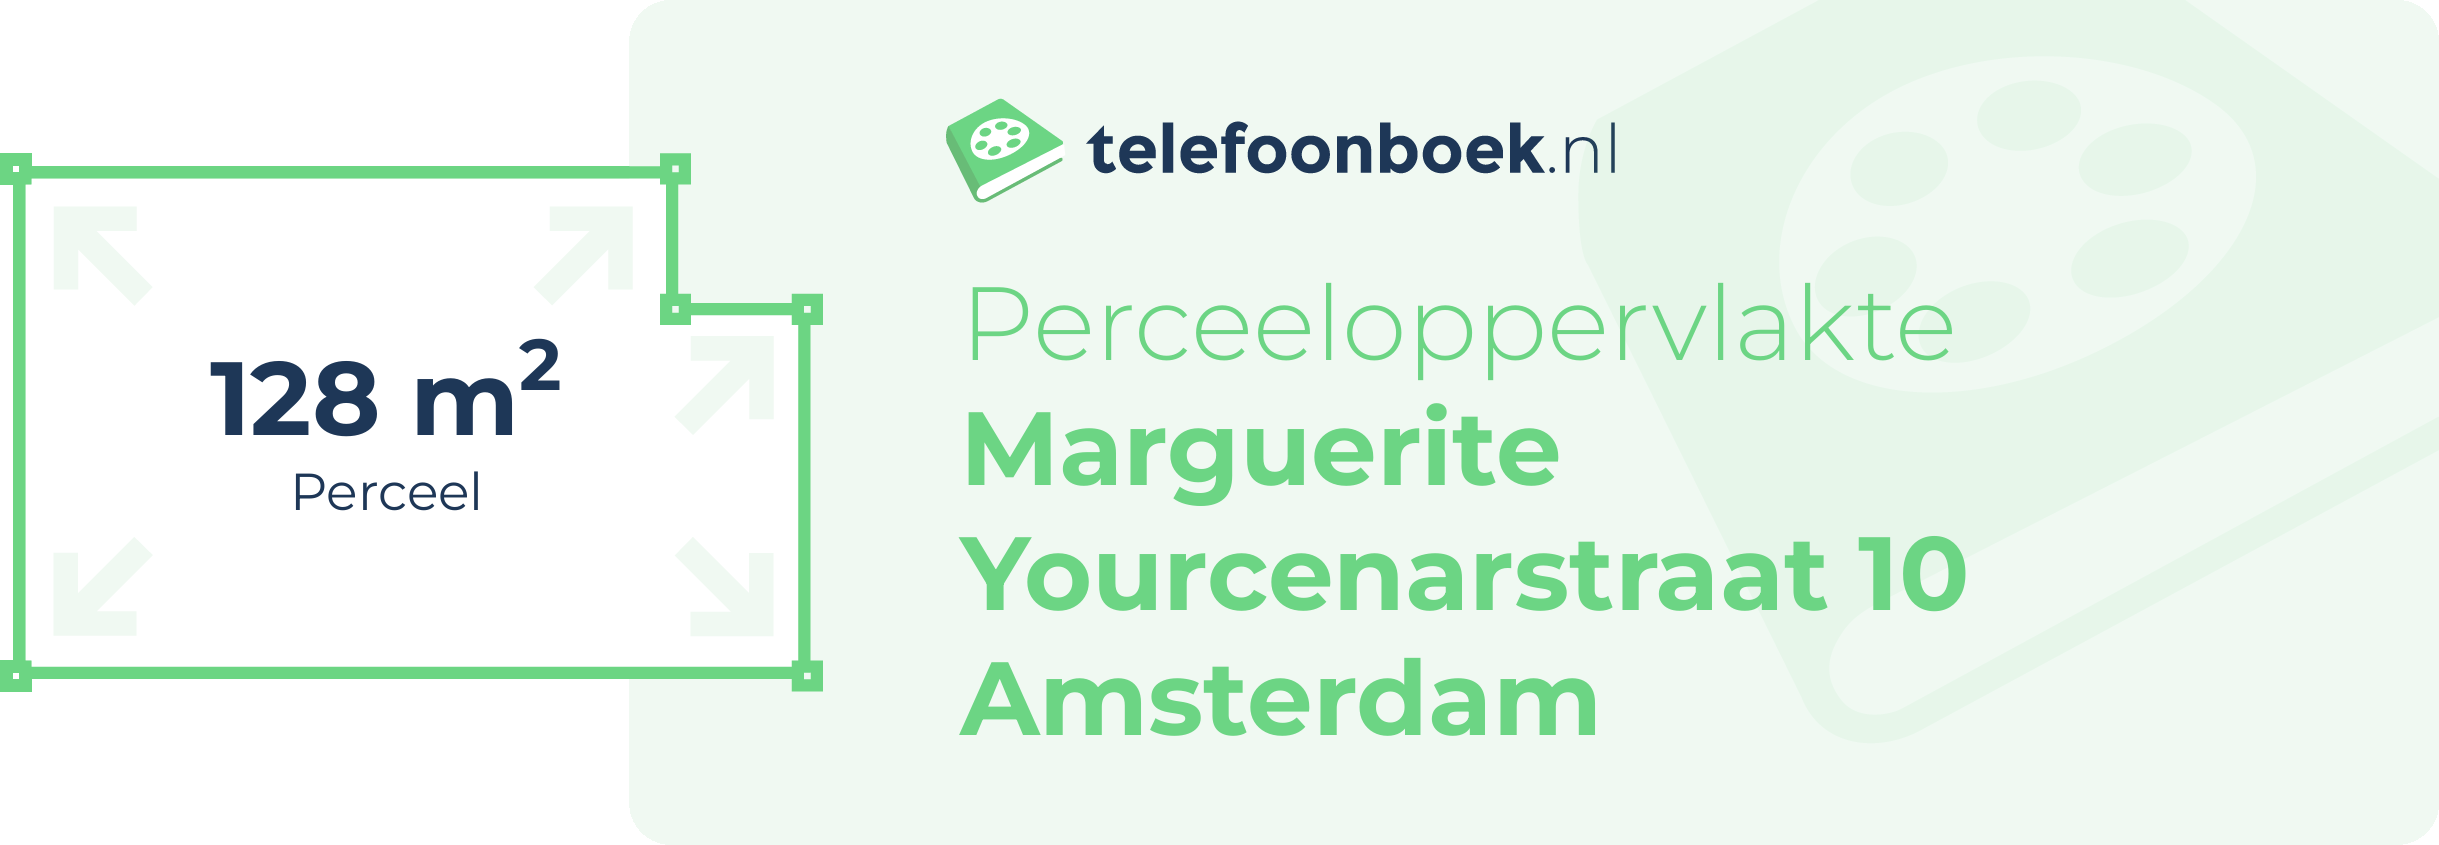 Perceeloppervlakte Marguerite Yourcenarstraat 10 Amsterdam